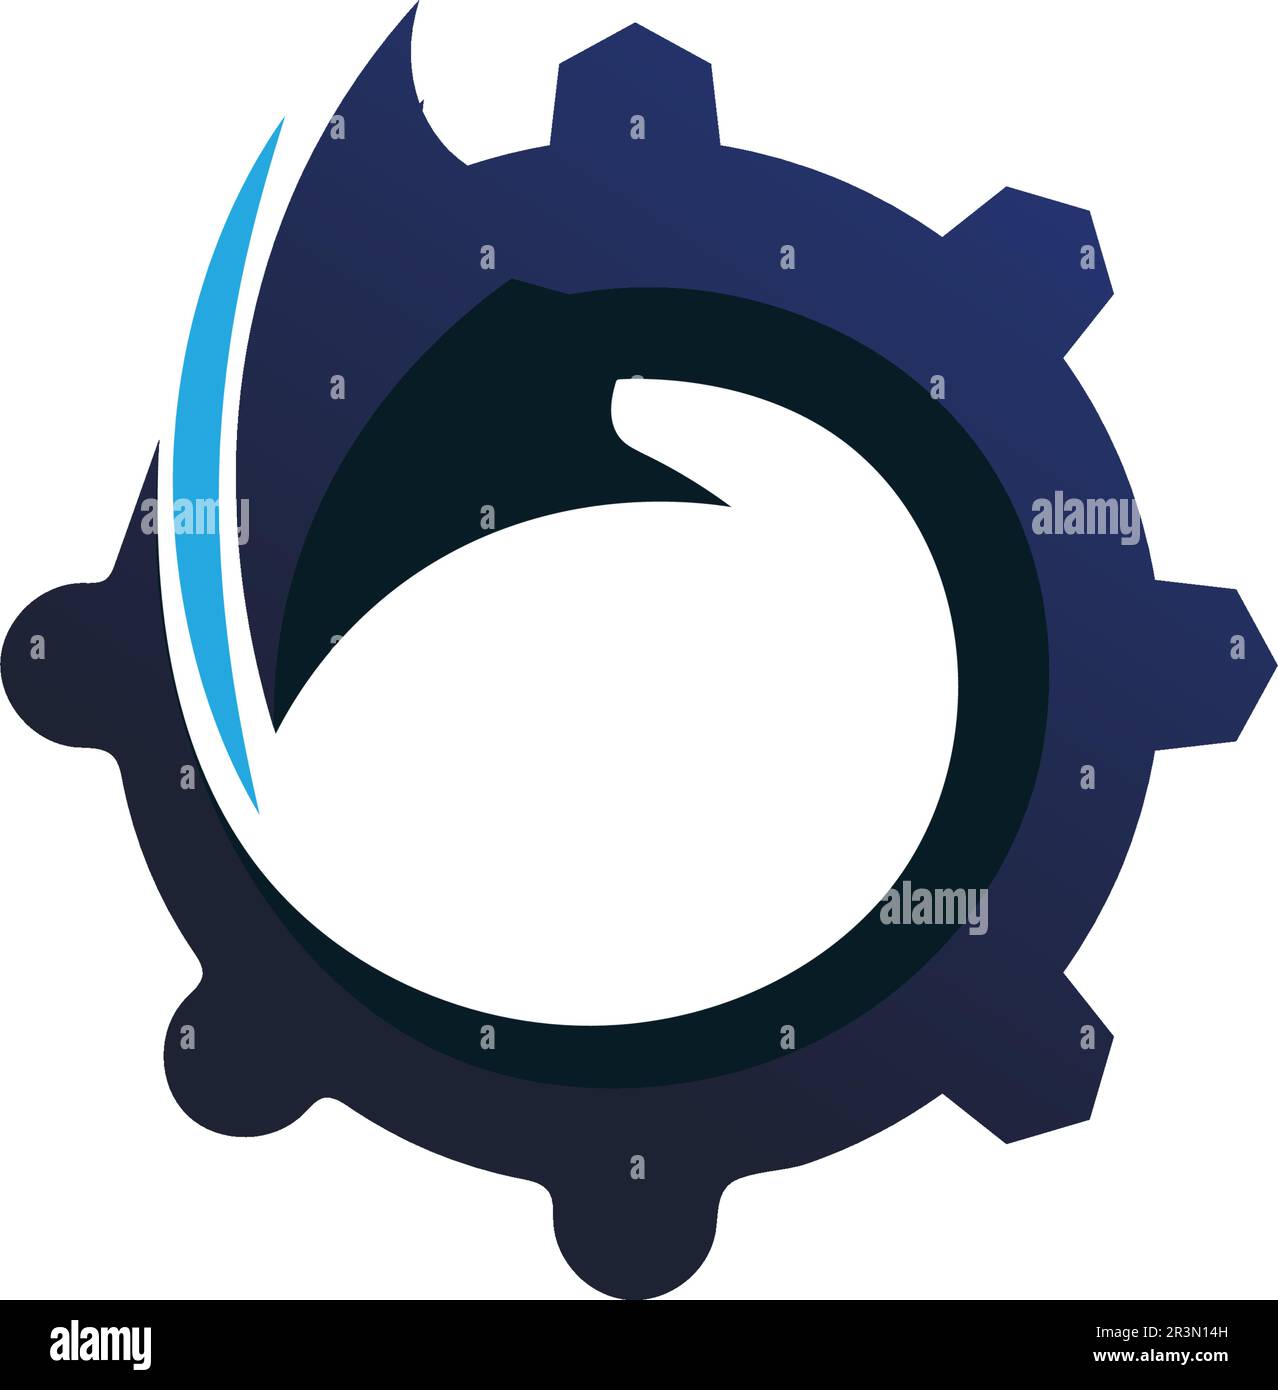 logo et symboles du câble internet Illustration de Vecteur